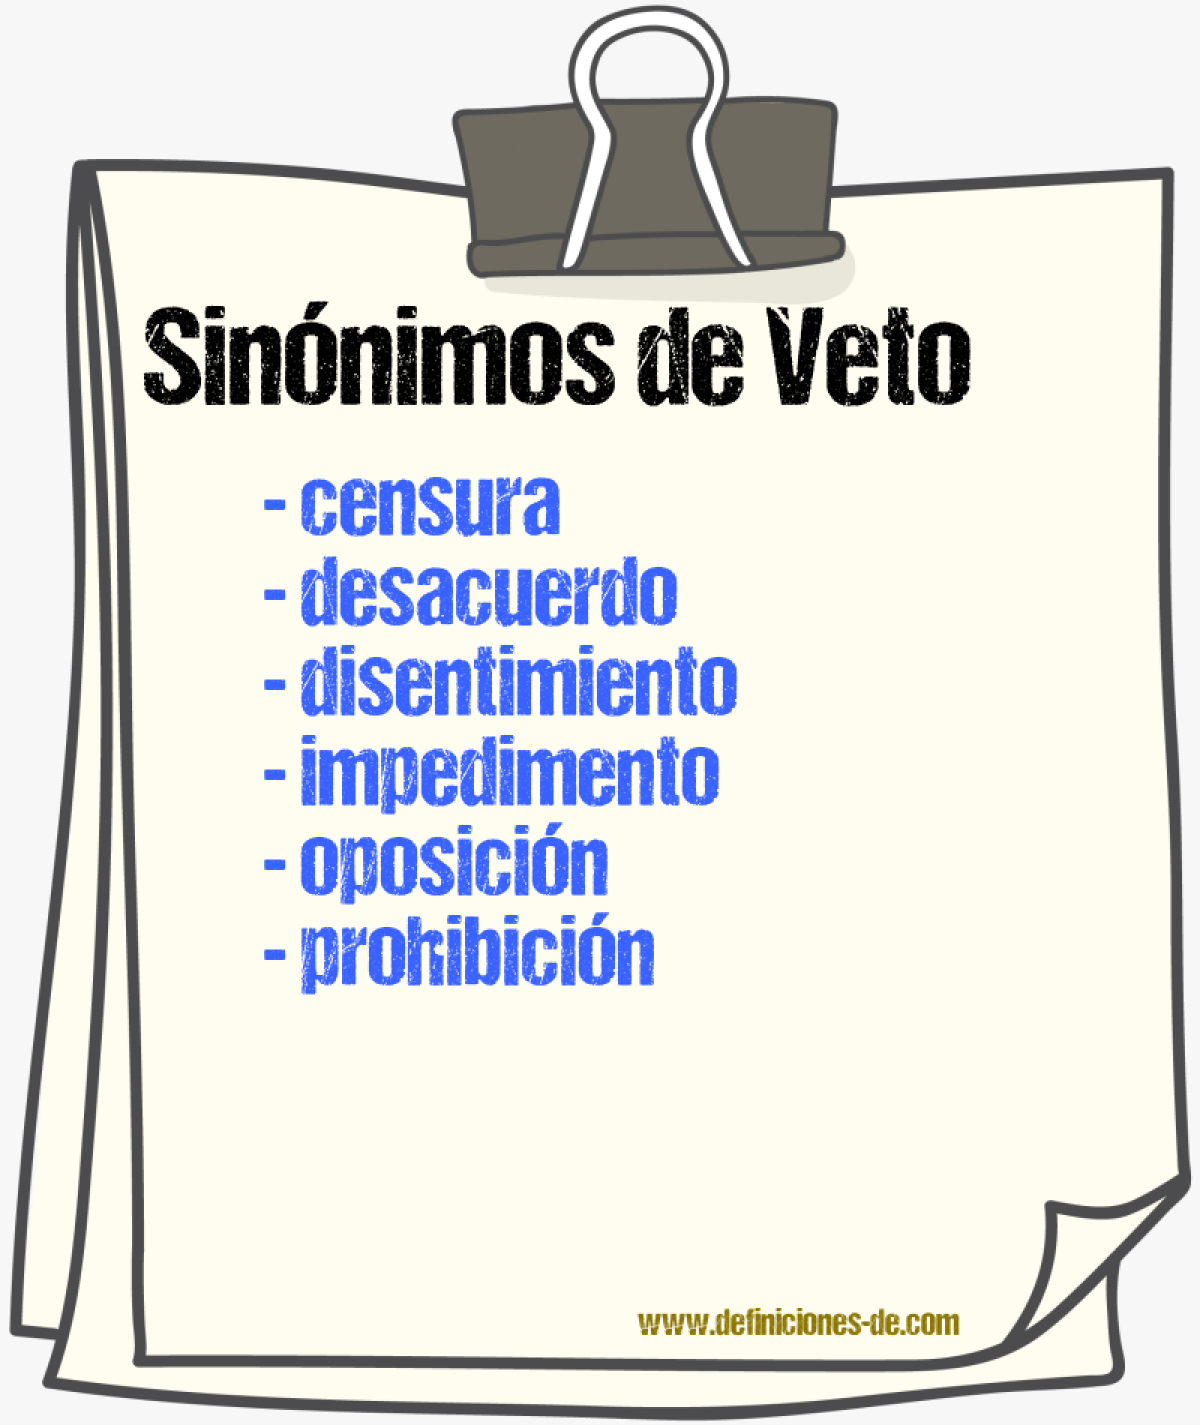 Sinónimos de veto